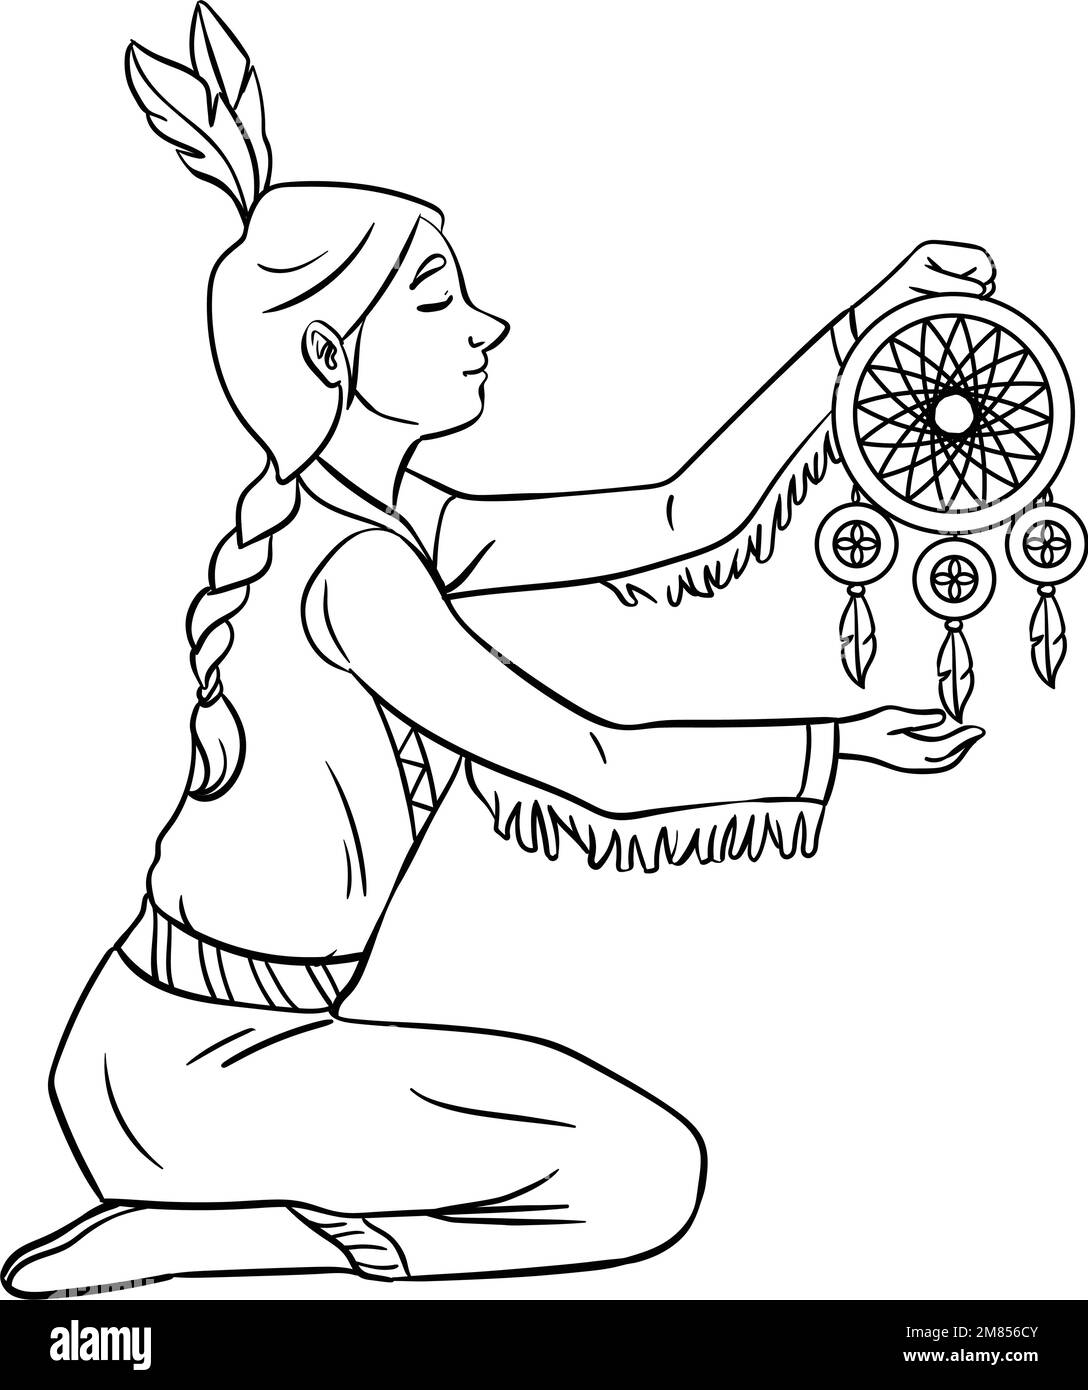 Fille indienne autochtone Dreamcatcher isolée Illustration de Vecteur